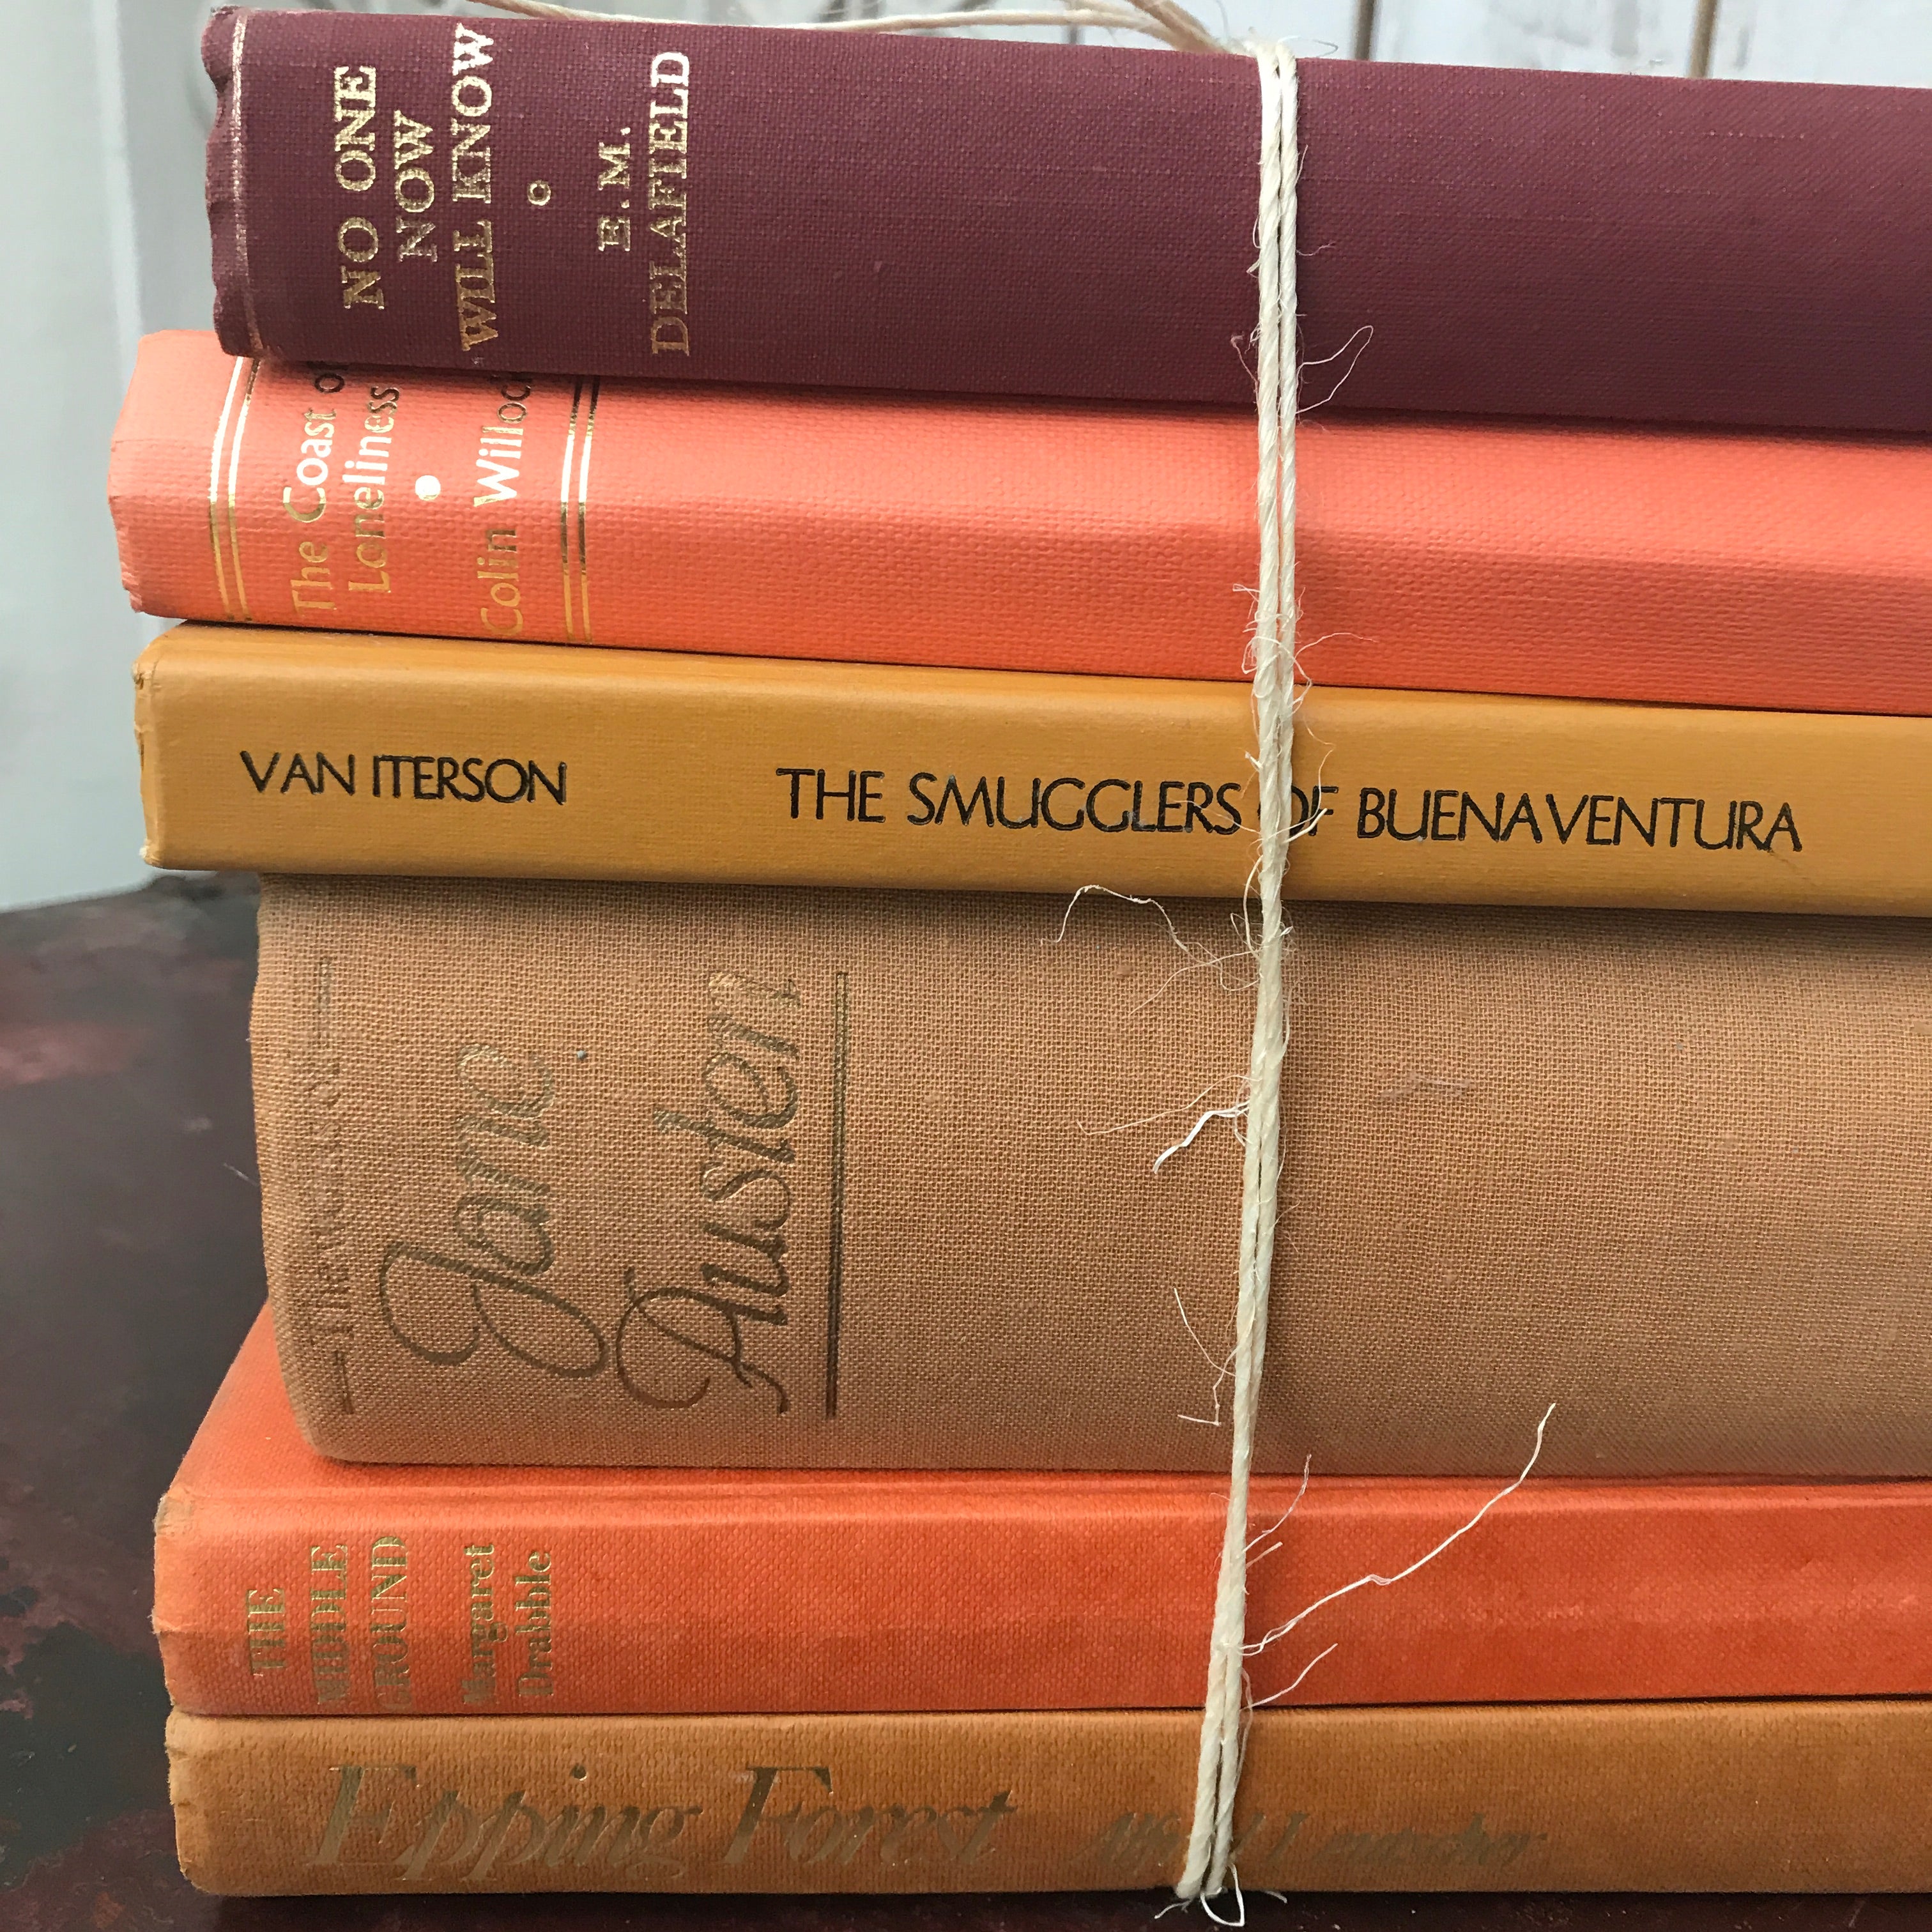 Vintage Book Bundle in Orange Tones